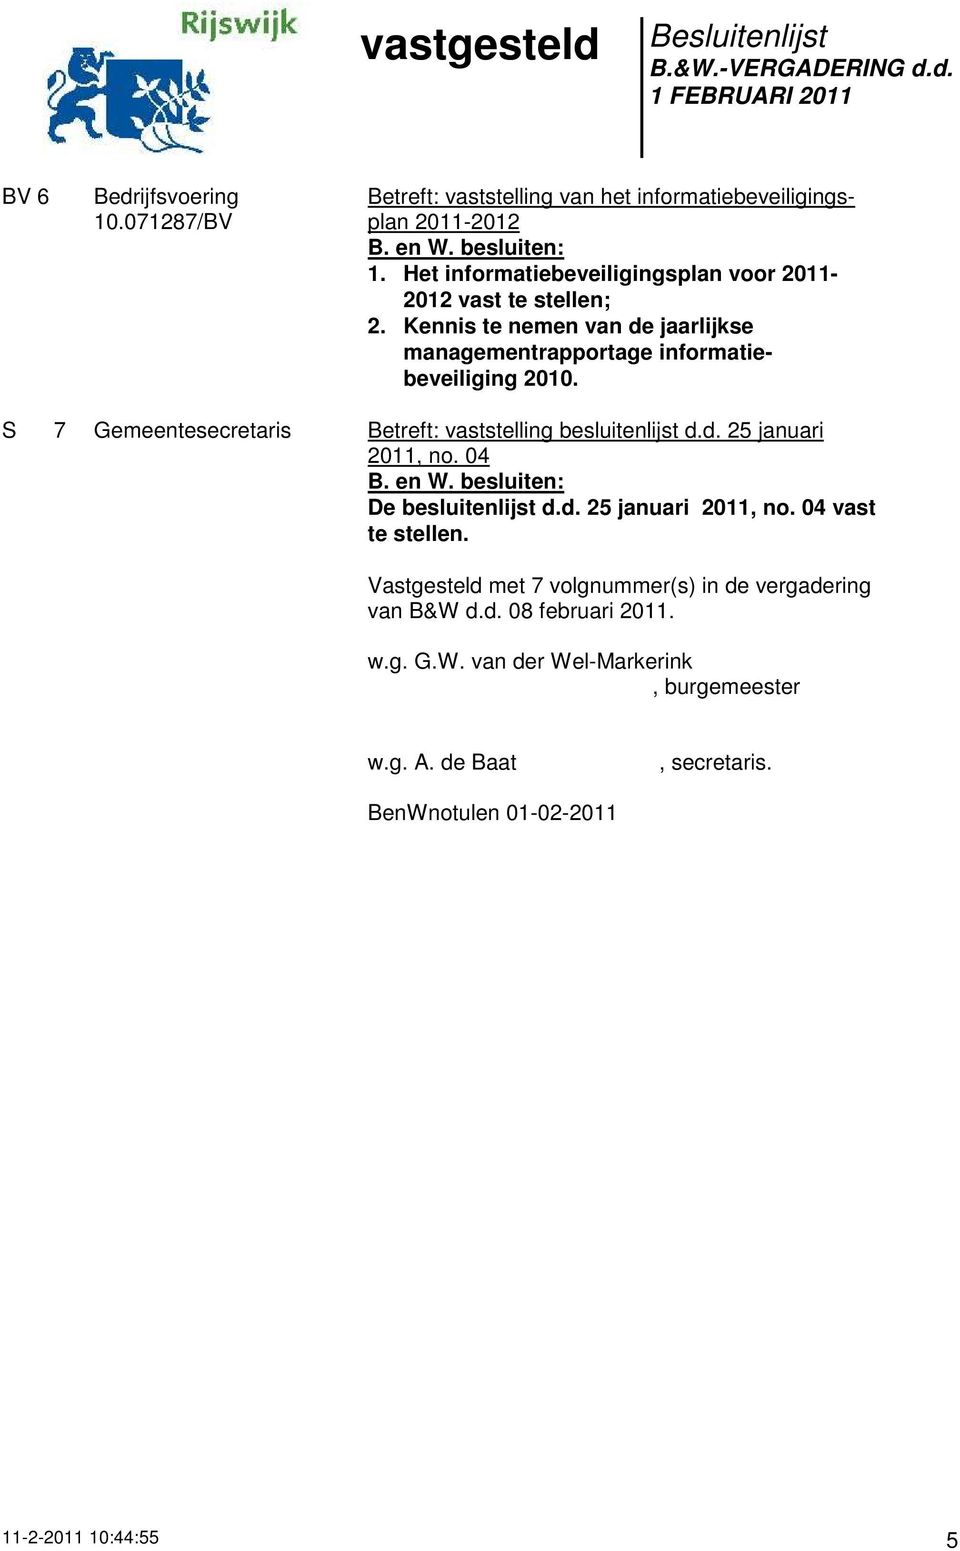 S 7 Gemeentesecretaris Betreft: vaststelling besluitenlijst d.d. 25 januari 2011, no. 04 De besluitenlijst d.d. 25 januari 2011, no. 04 vast te stellen.